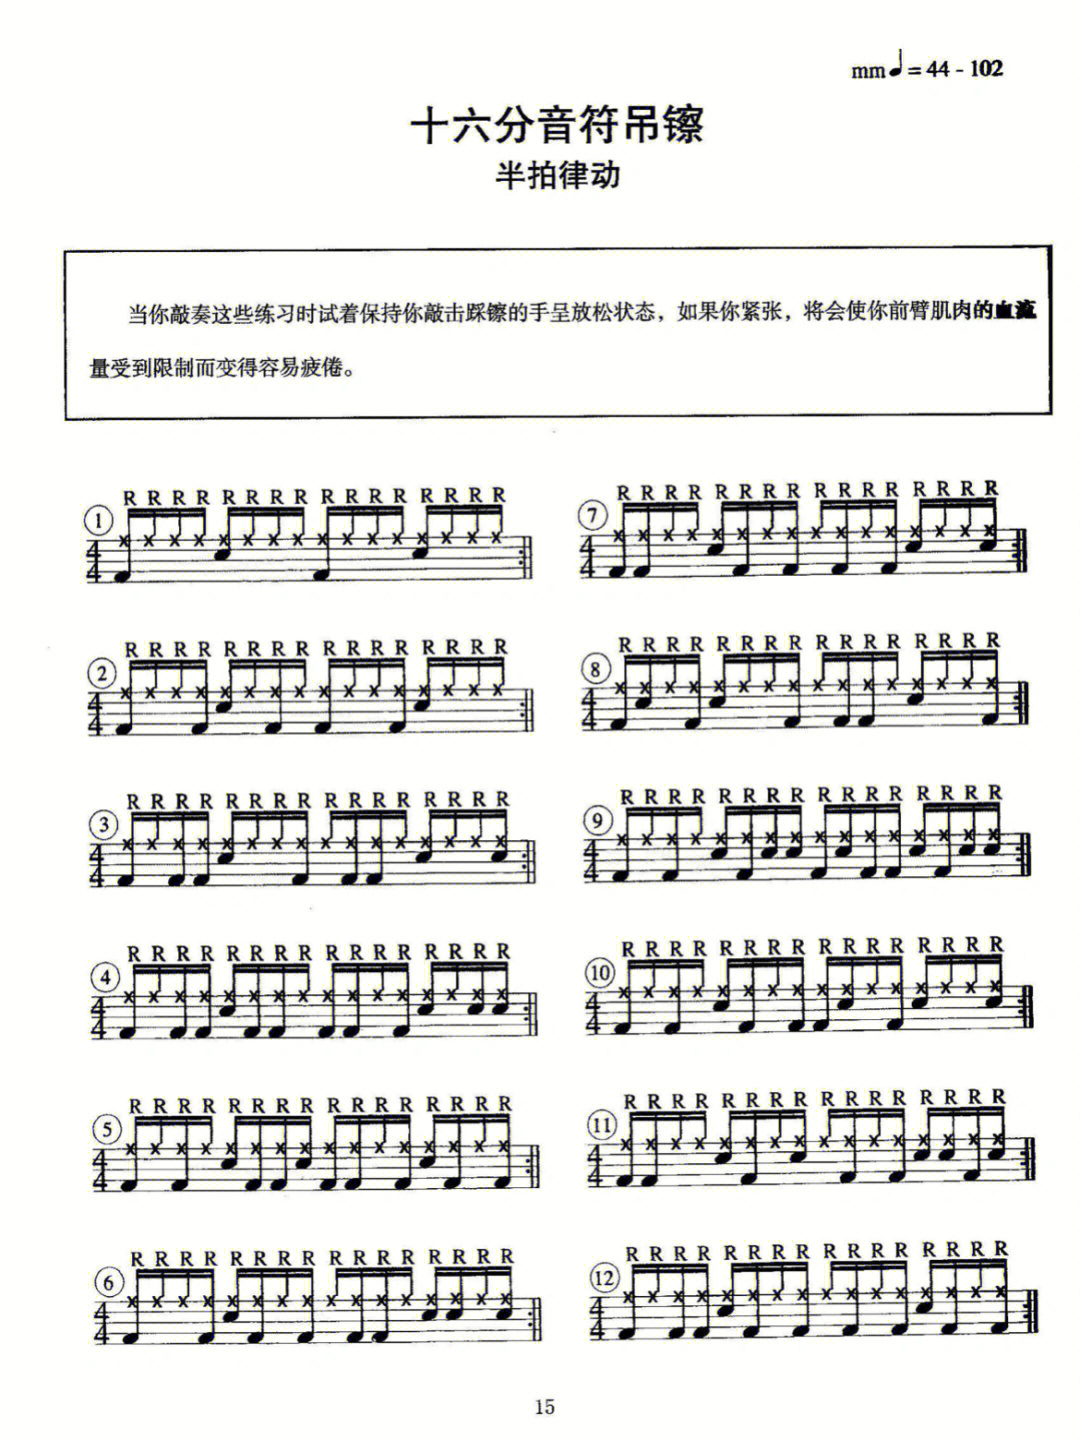 架子鼓20种常用节奏型图片